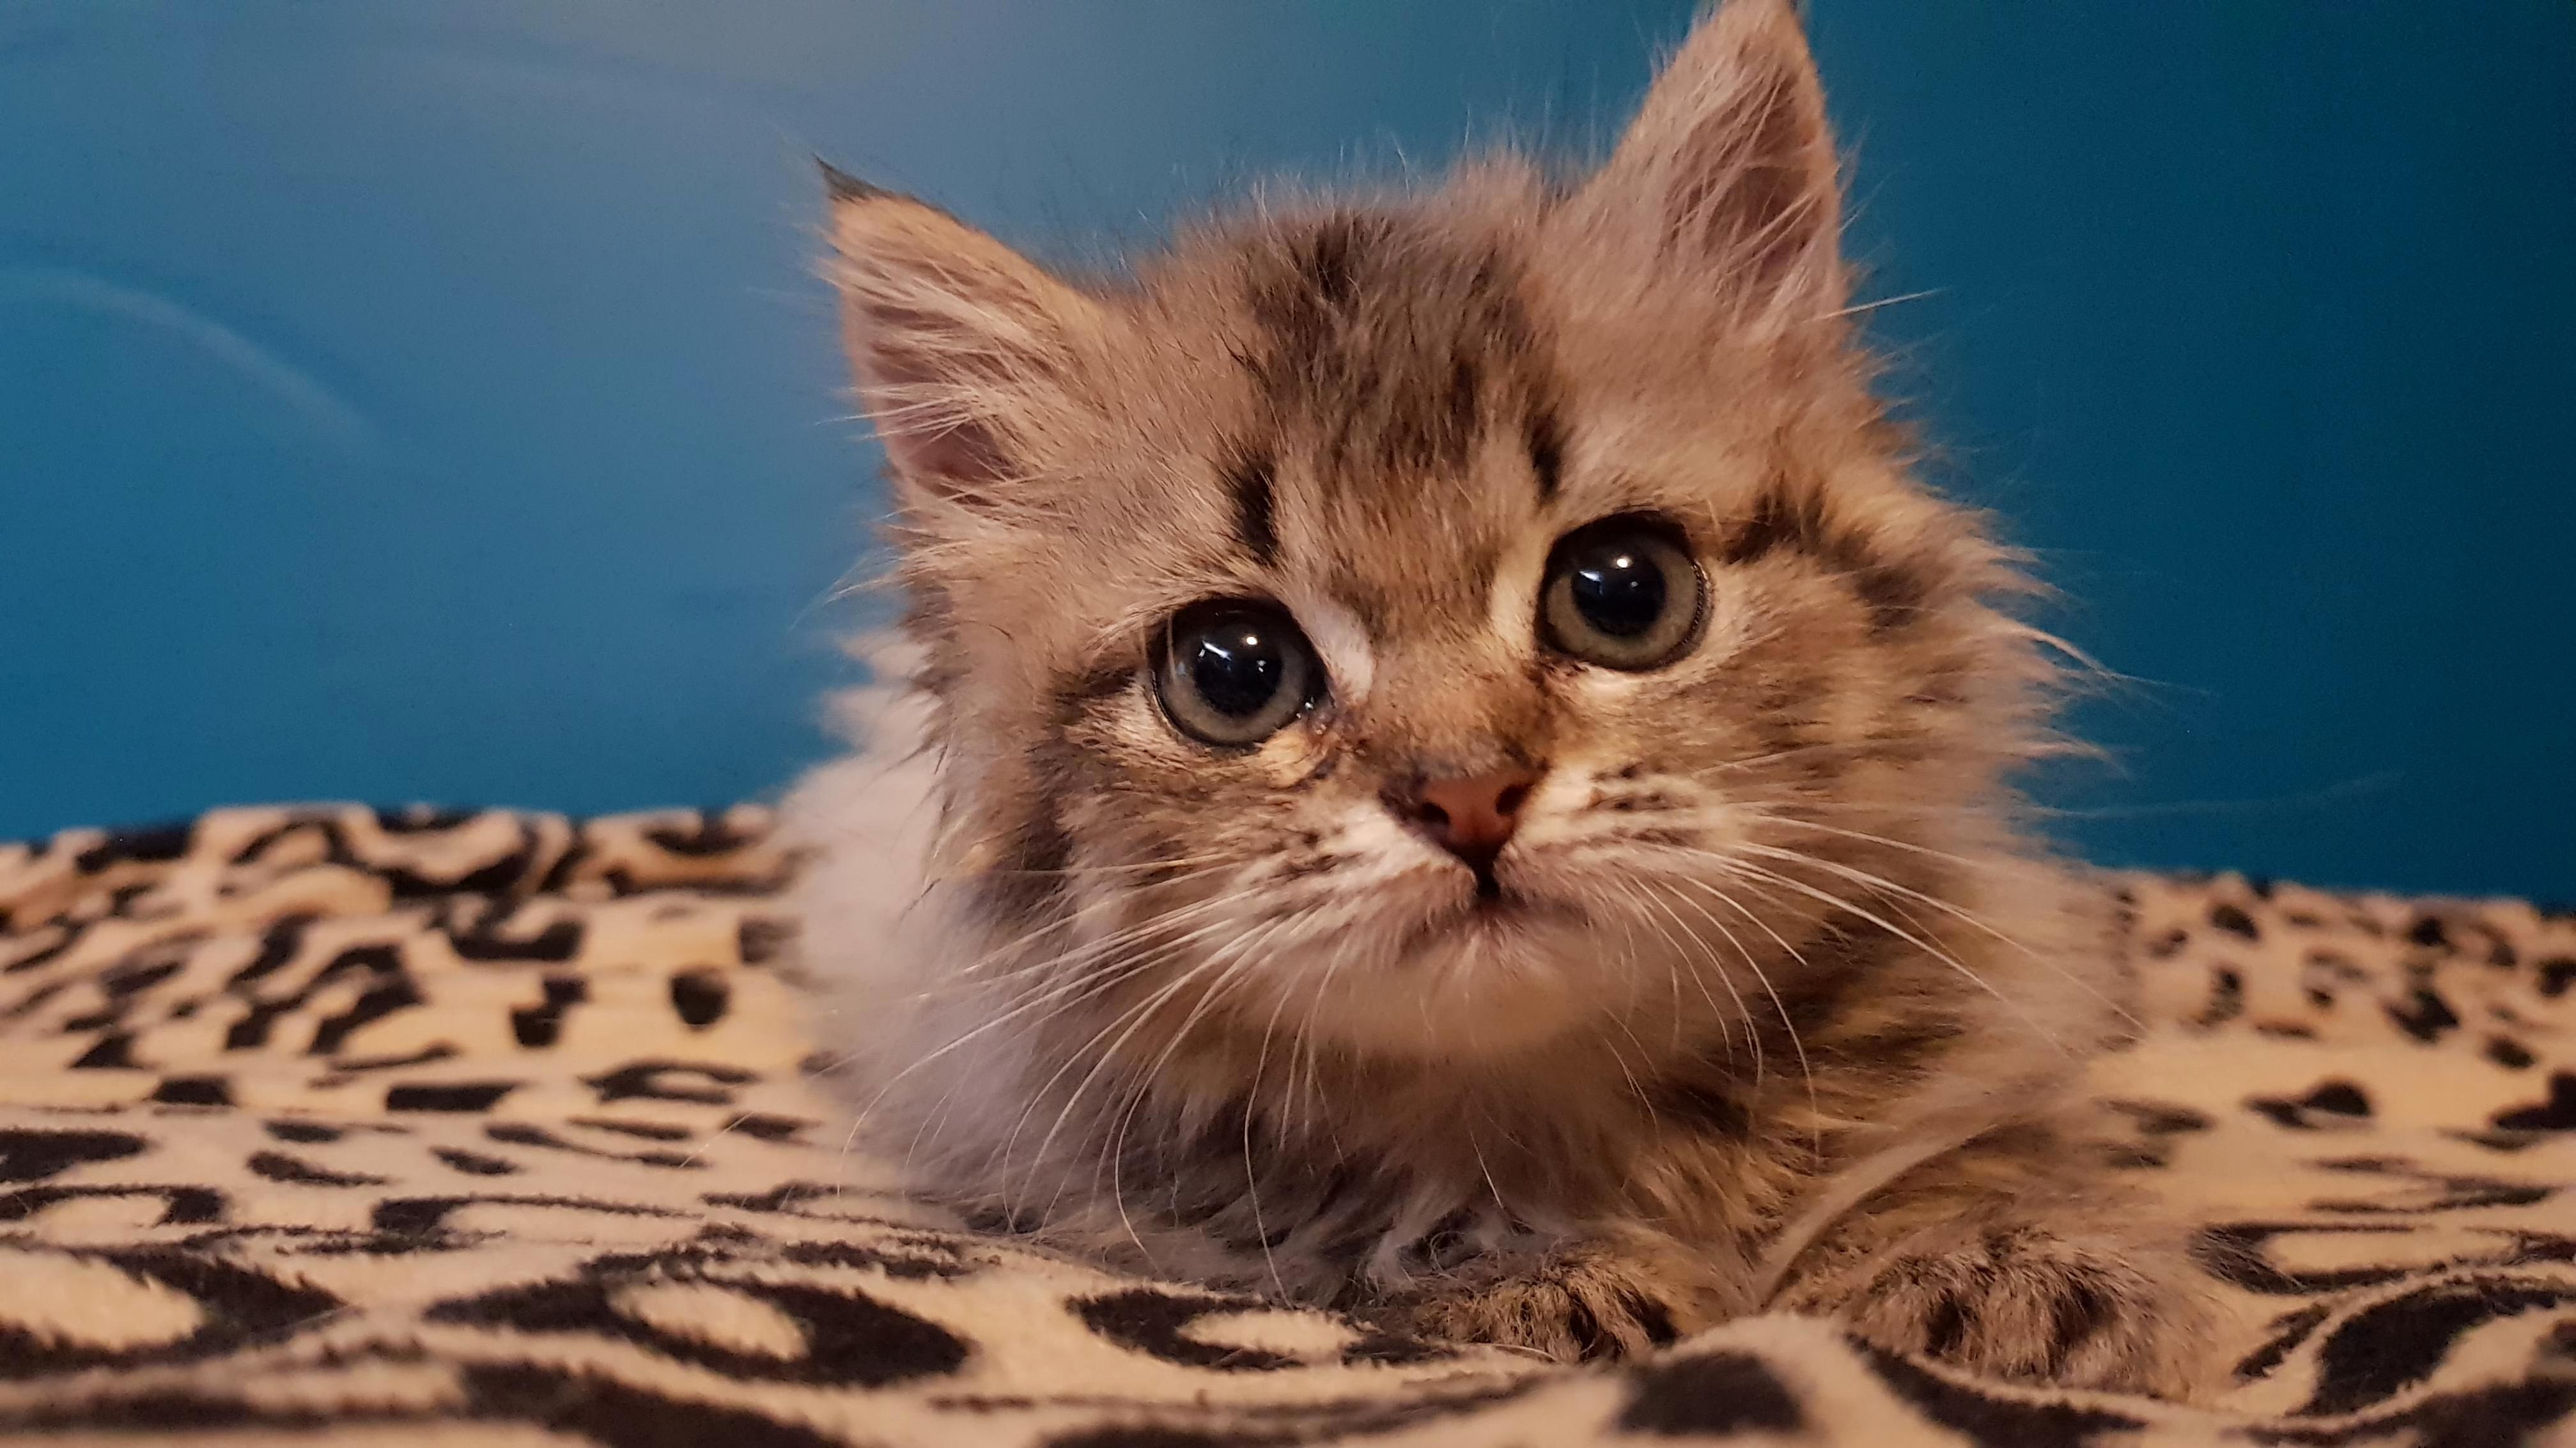 5 week old foster kitten named beachball 